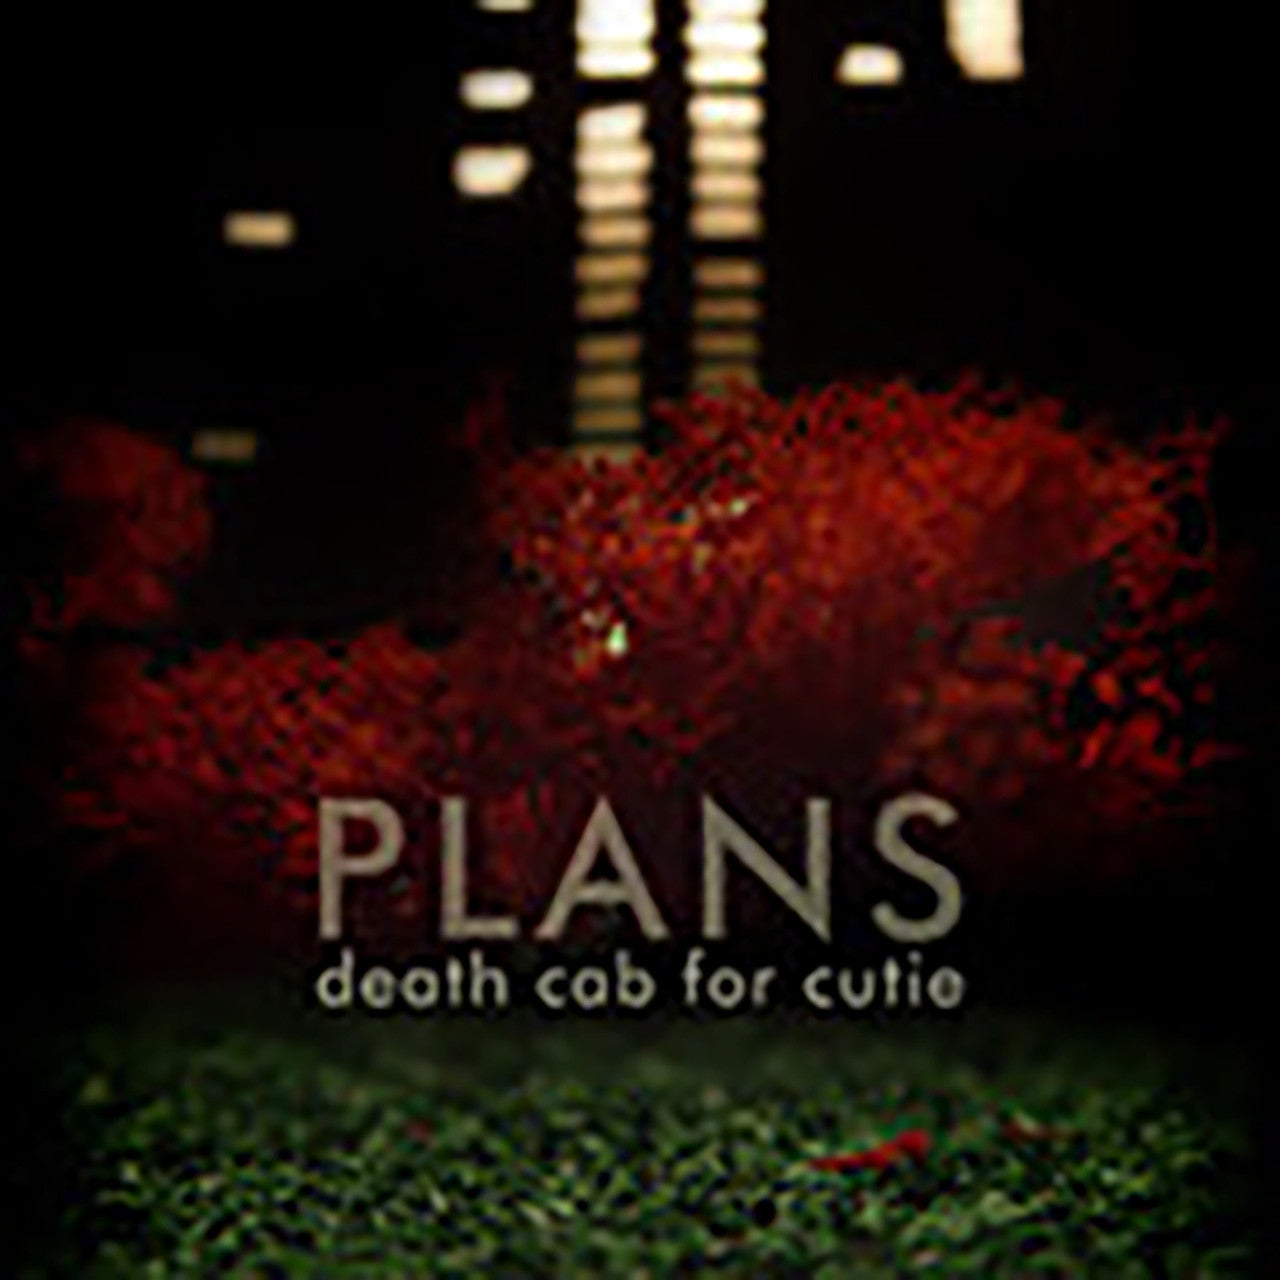 Death Cab for Cutie - Plans - Vinyl